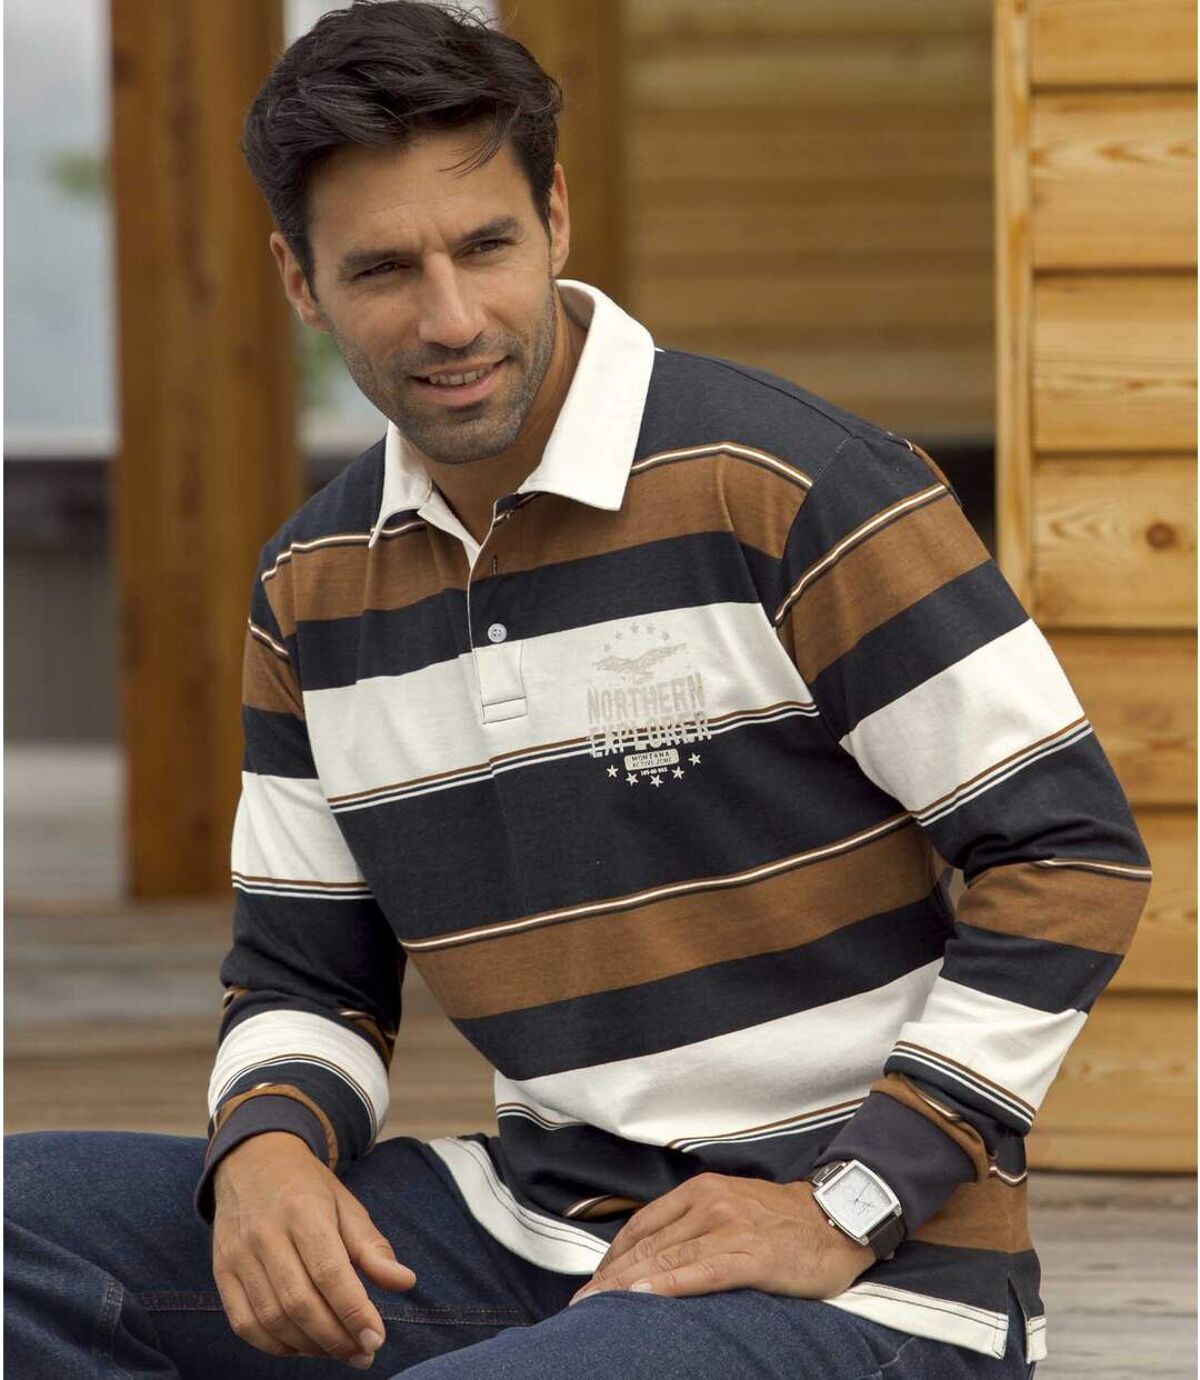 Men's Brown & Navy Long-Sleeved Polo Shirt Atlas For Men